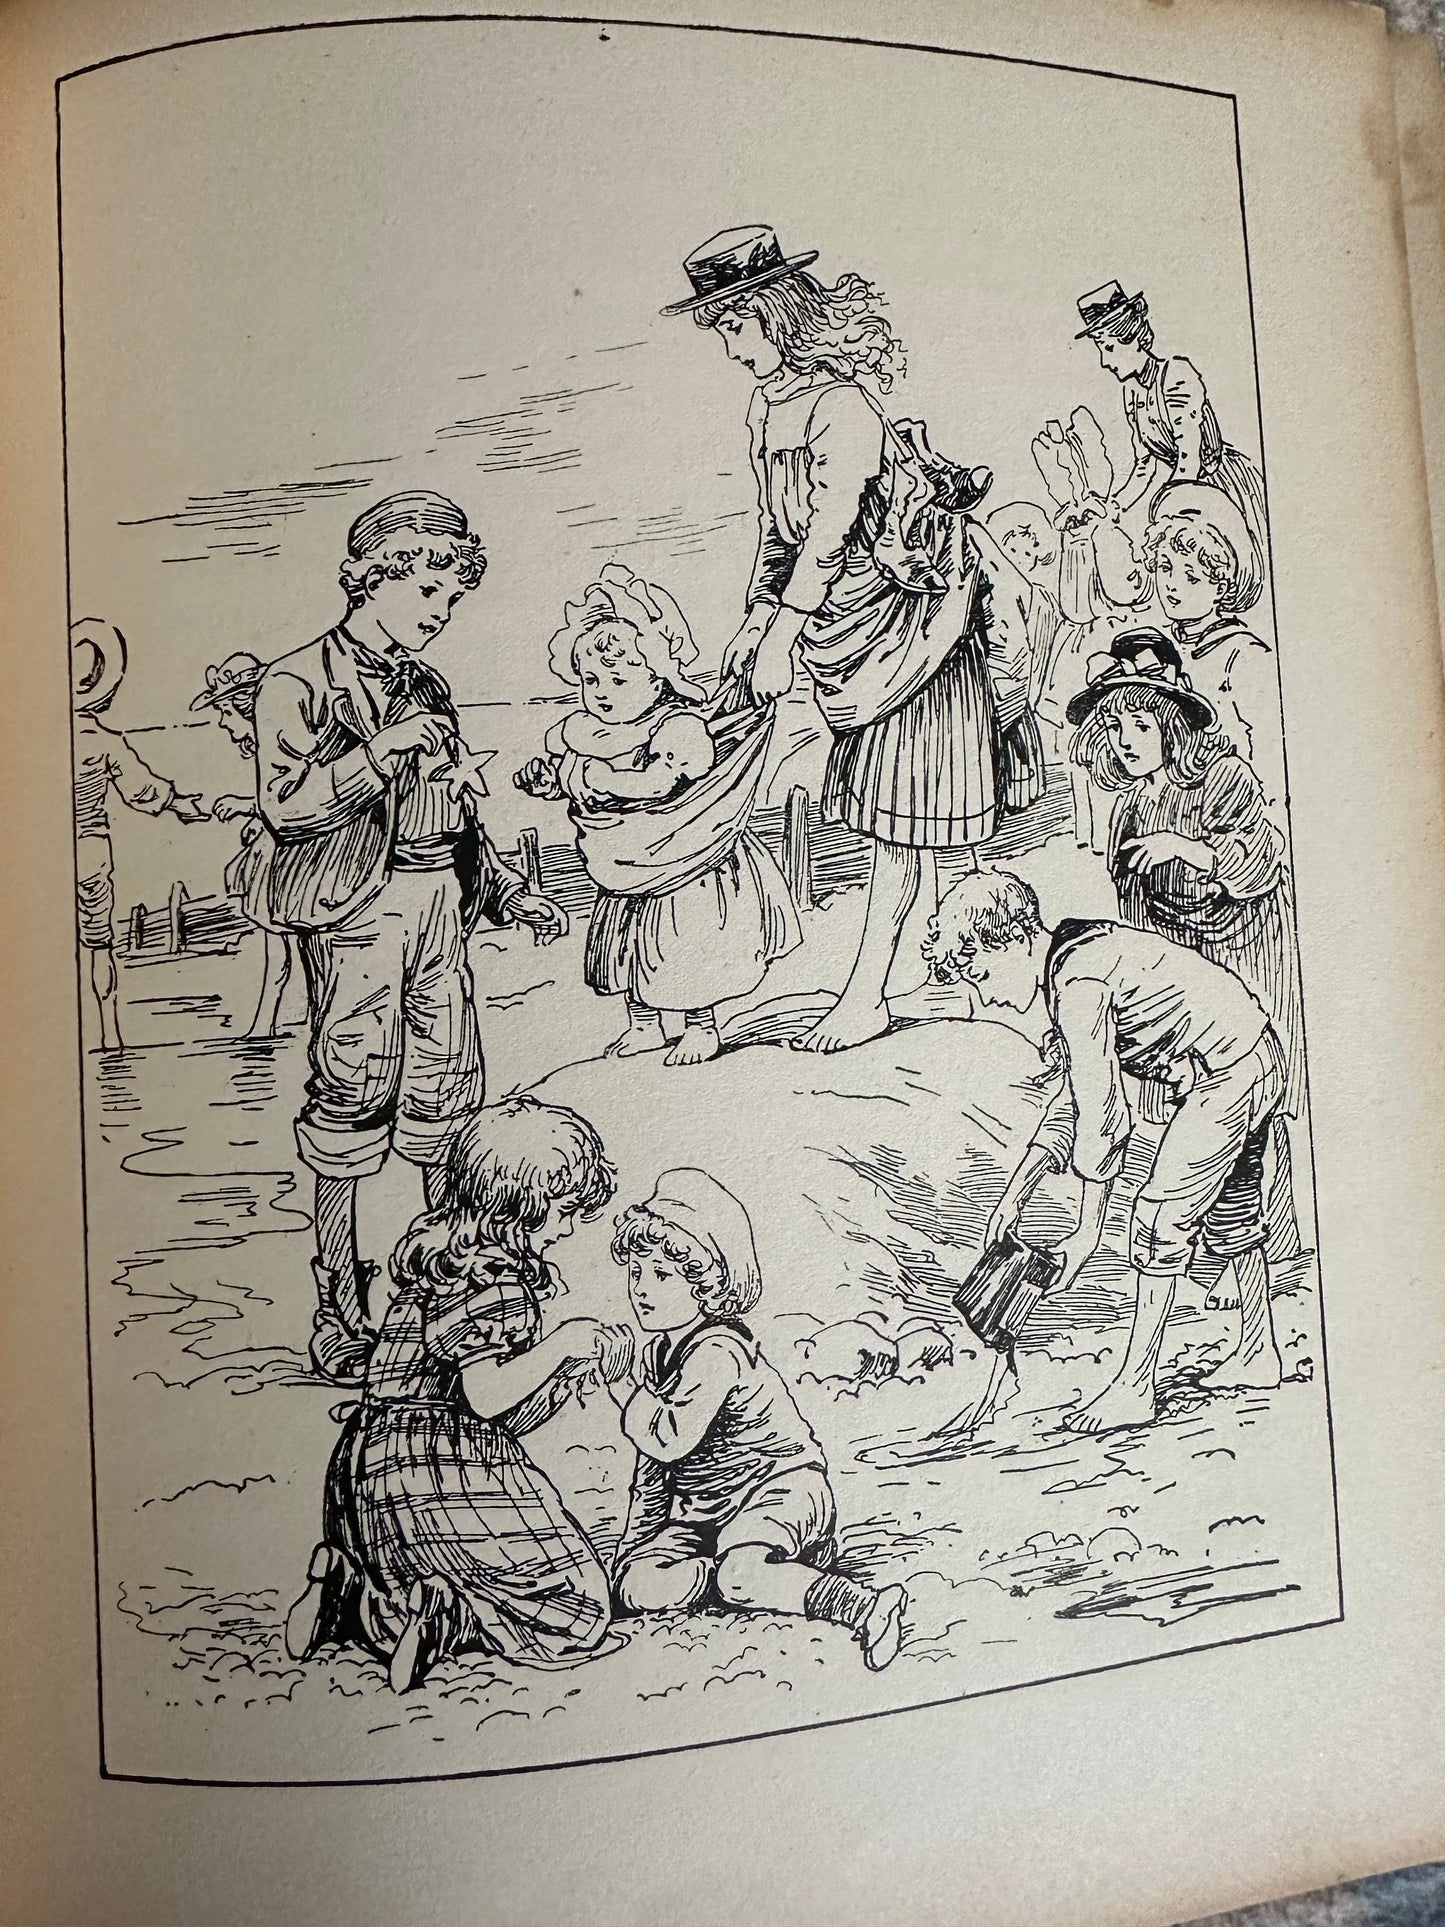 1900 Seaside Holiday Frolics - L.T. Mead, G. Manville Fenn etc(Ernest Nister)